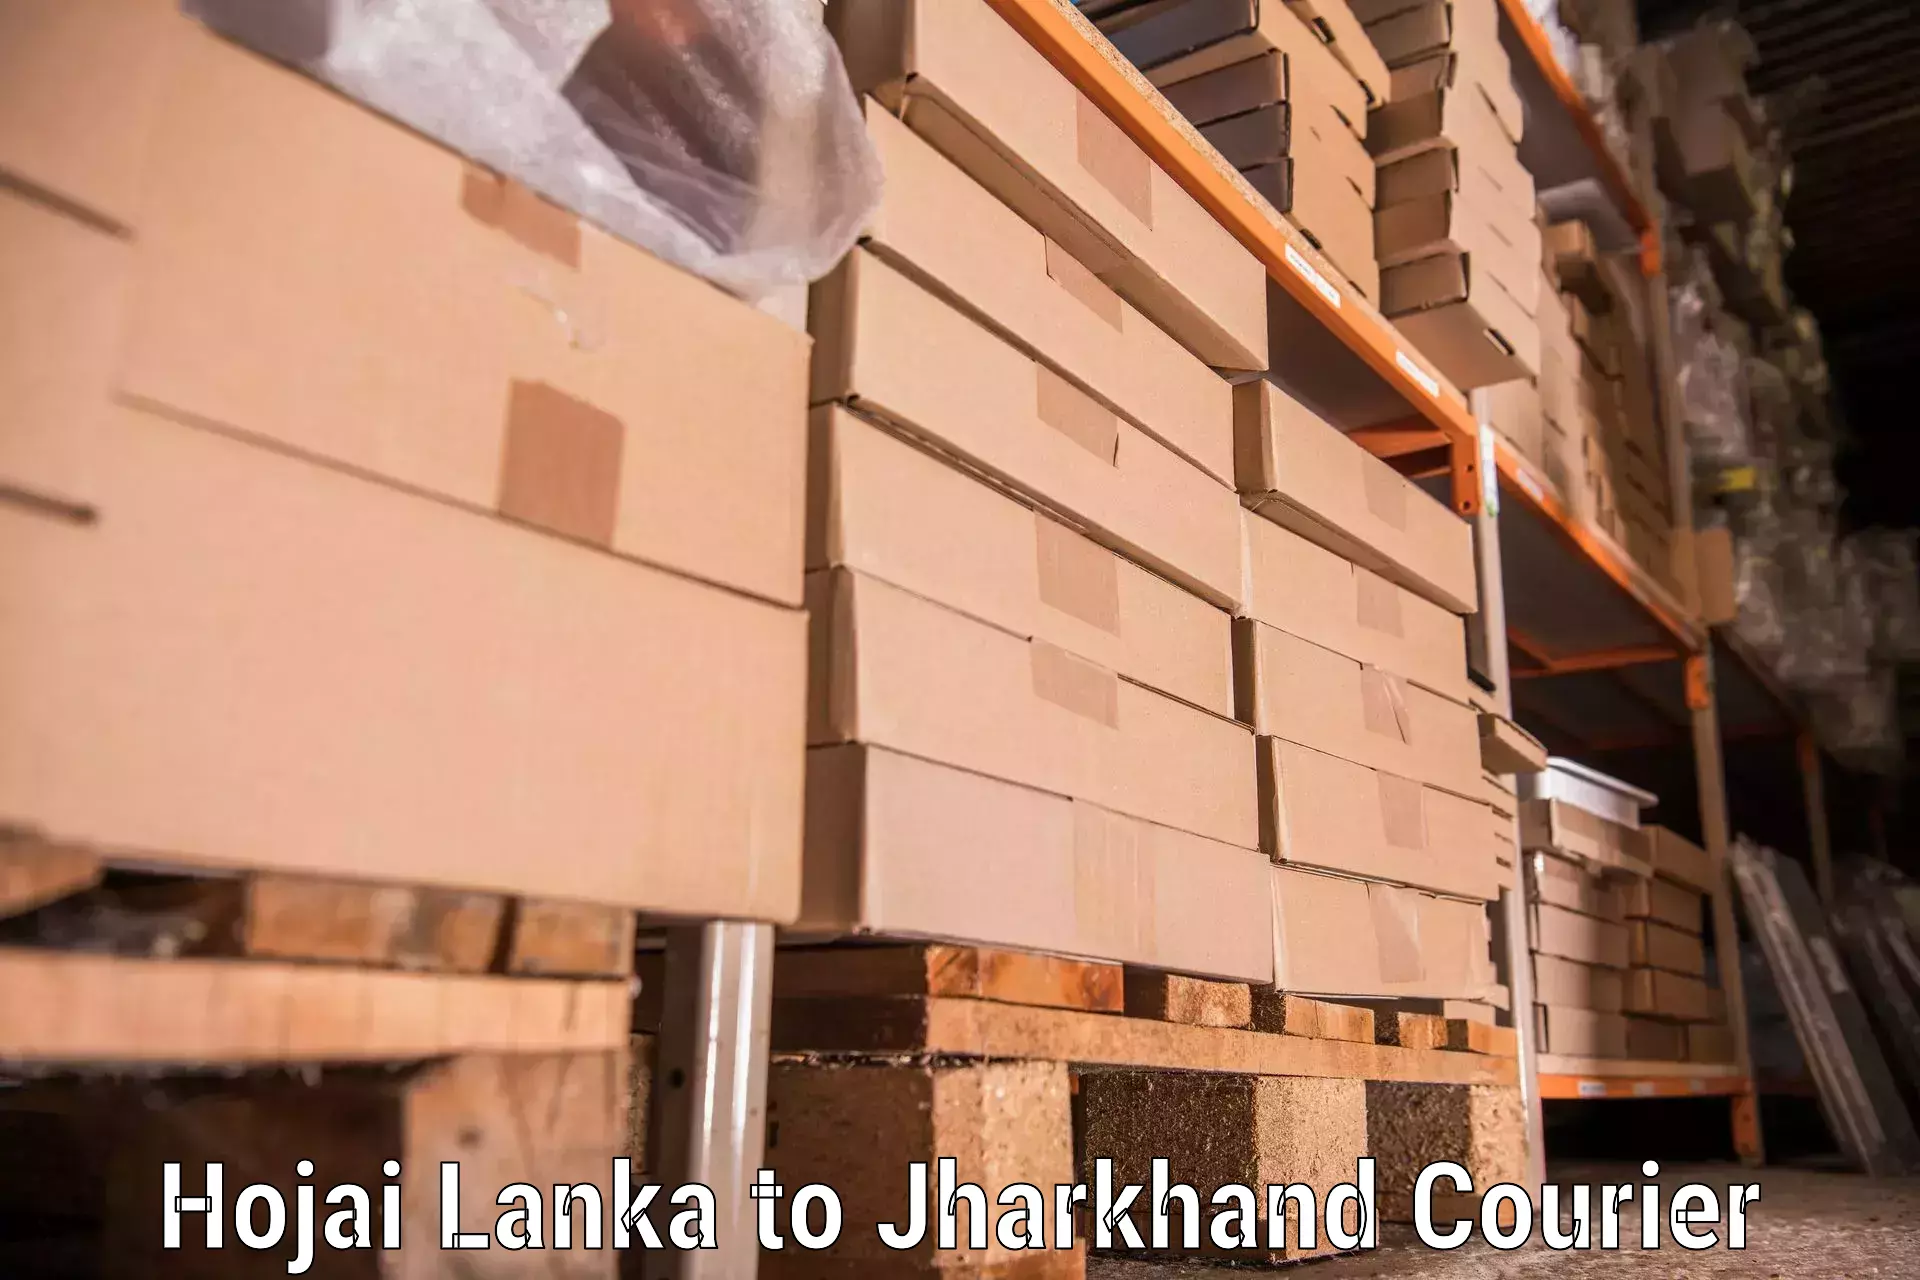 High-quality moving services Hojai Lanka to Giridih